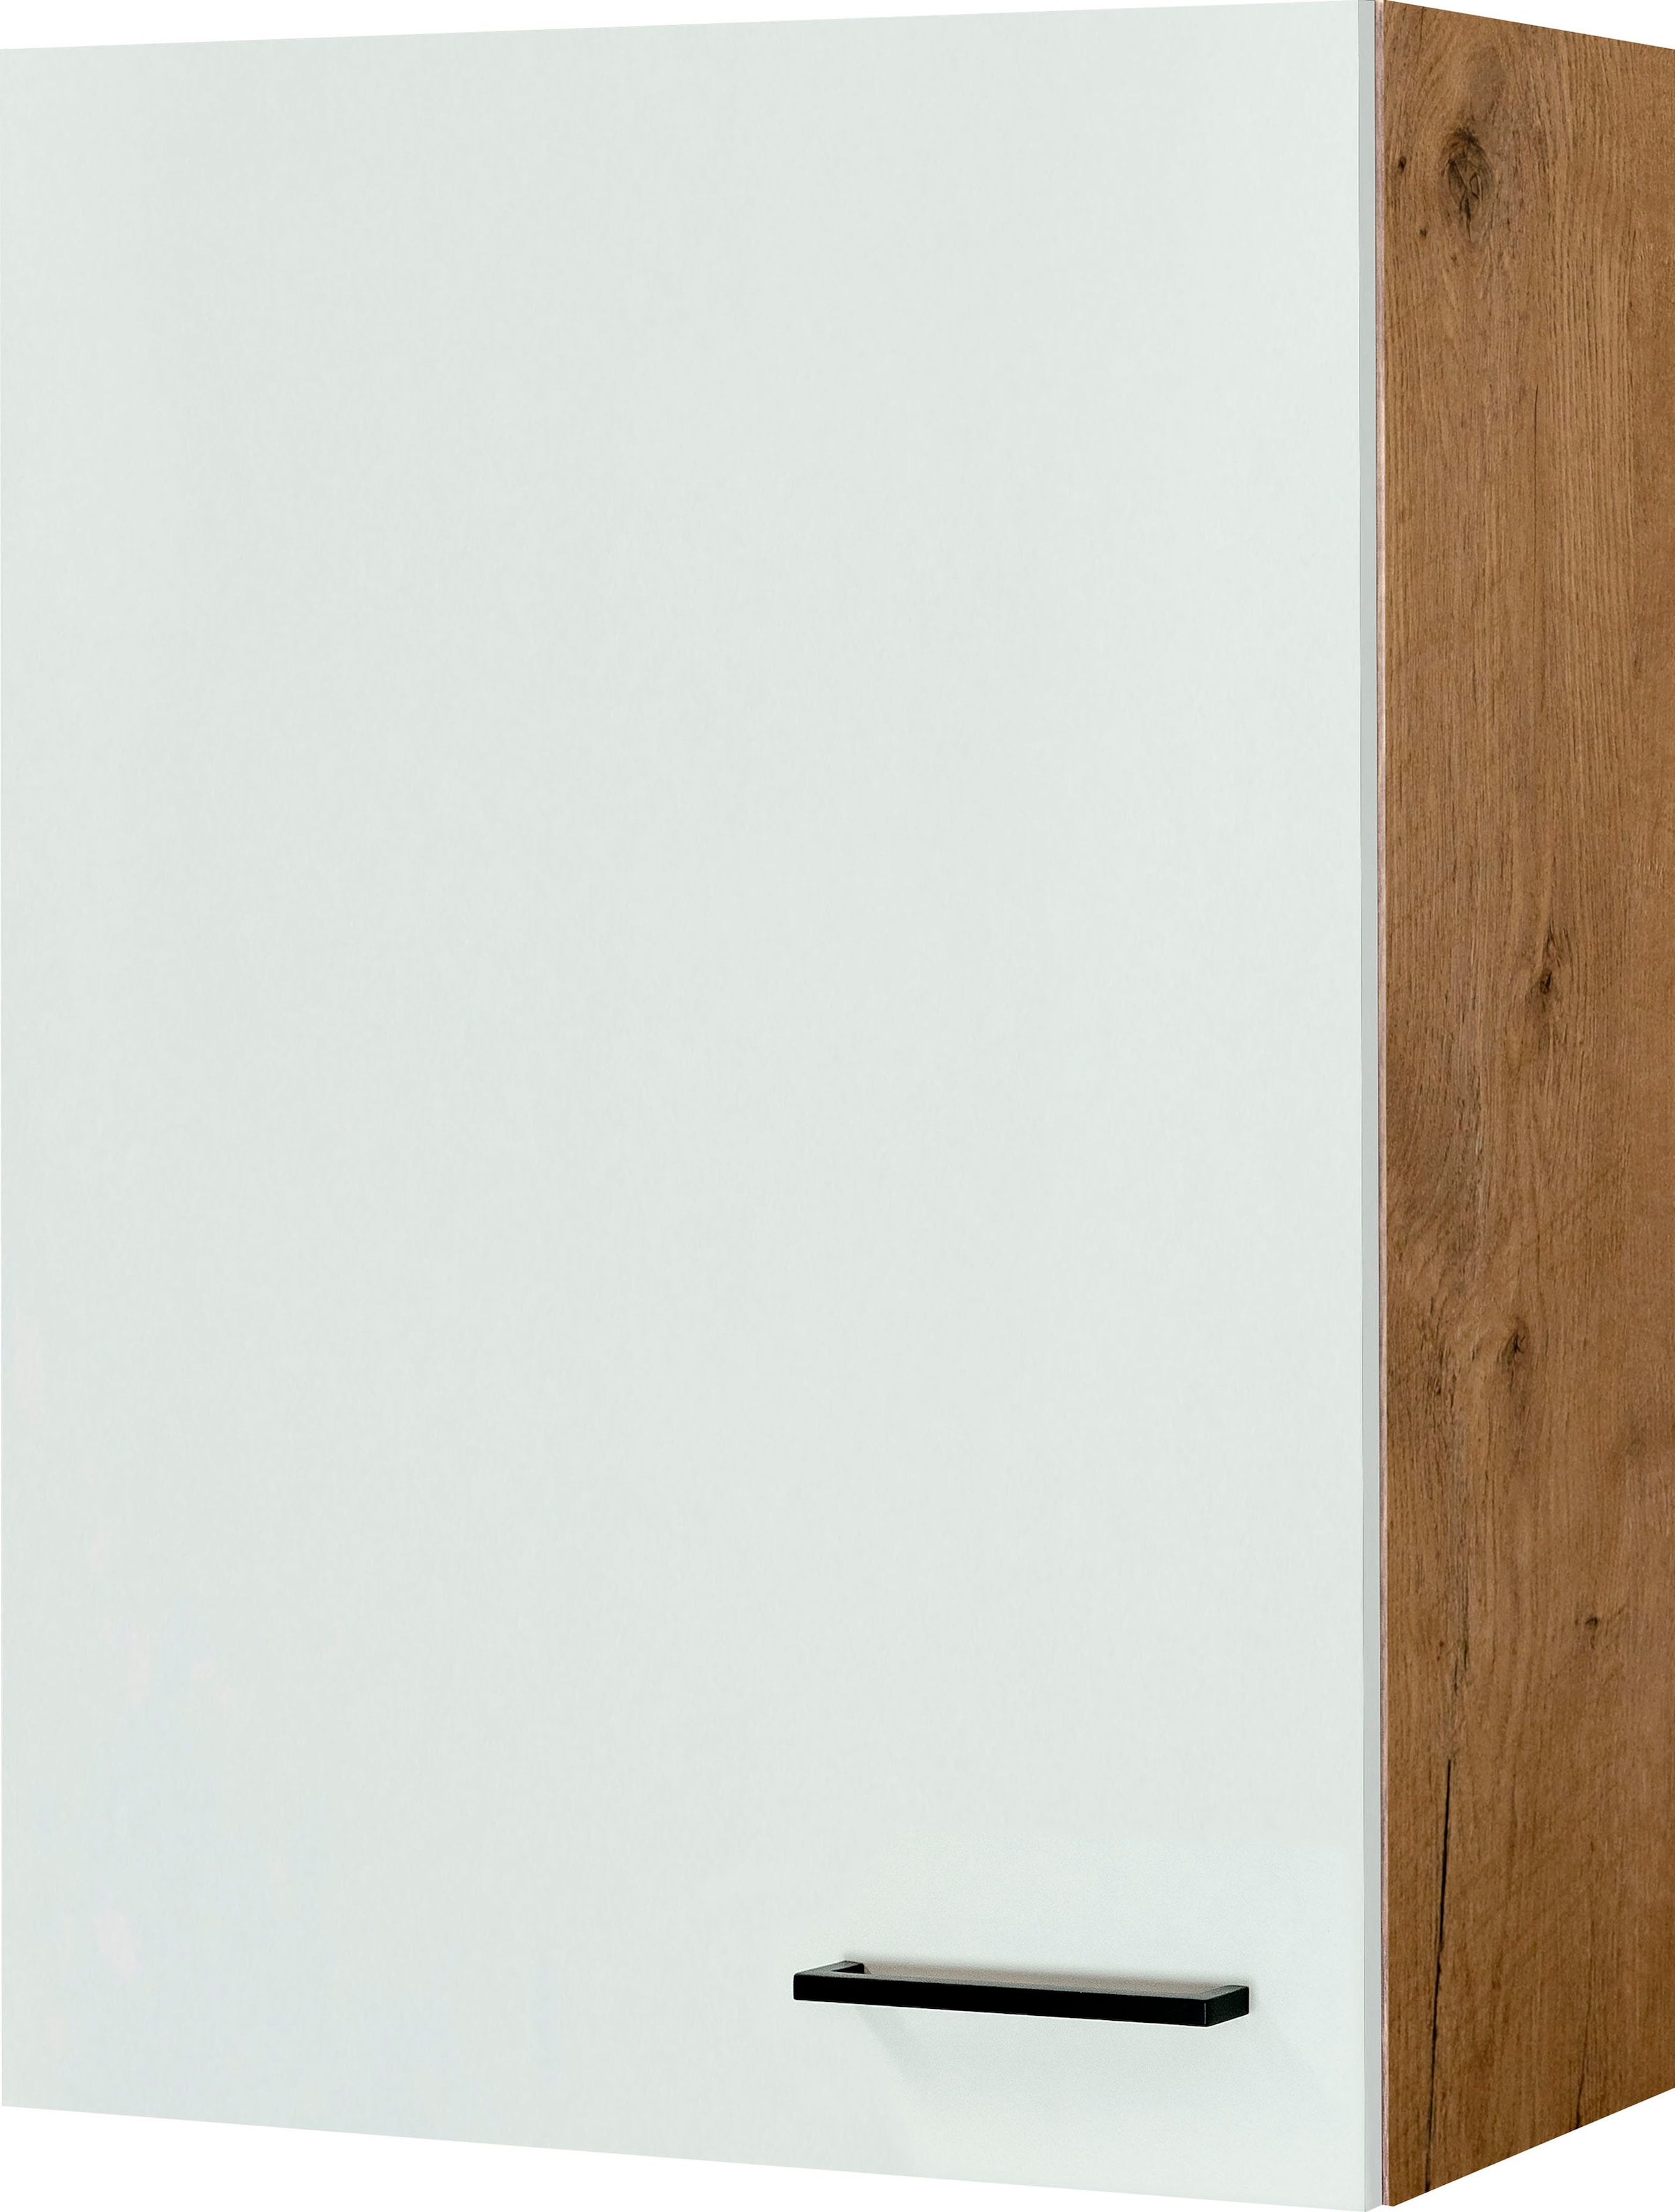 Flex-Well Hängeschrank »Vintea«, (B x H x T) 60 x 89 x 32 cm, für viel  Stauraum kaufen | BAUR